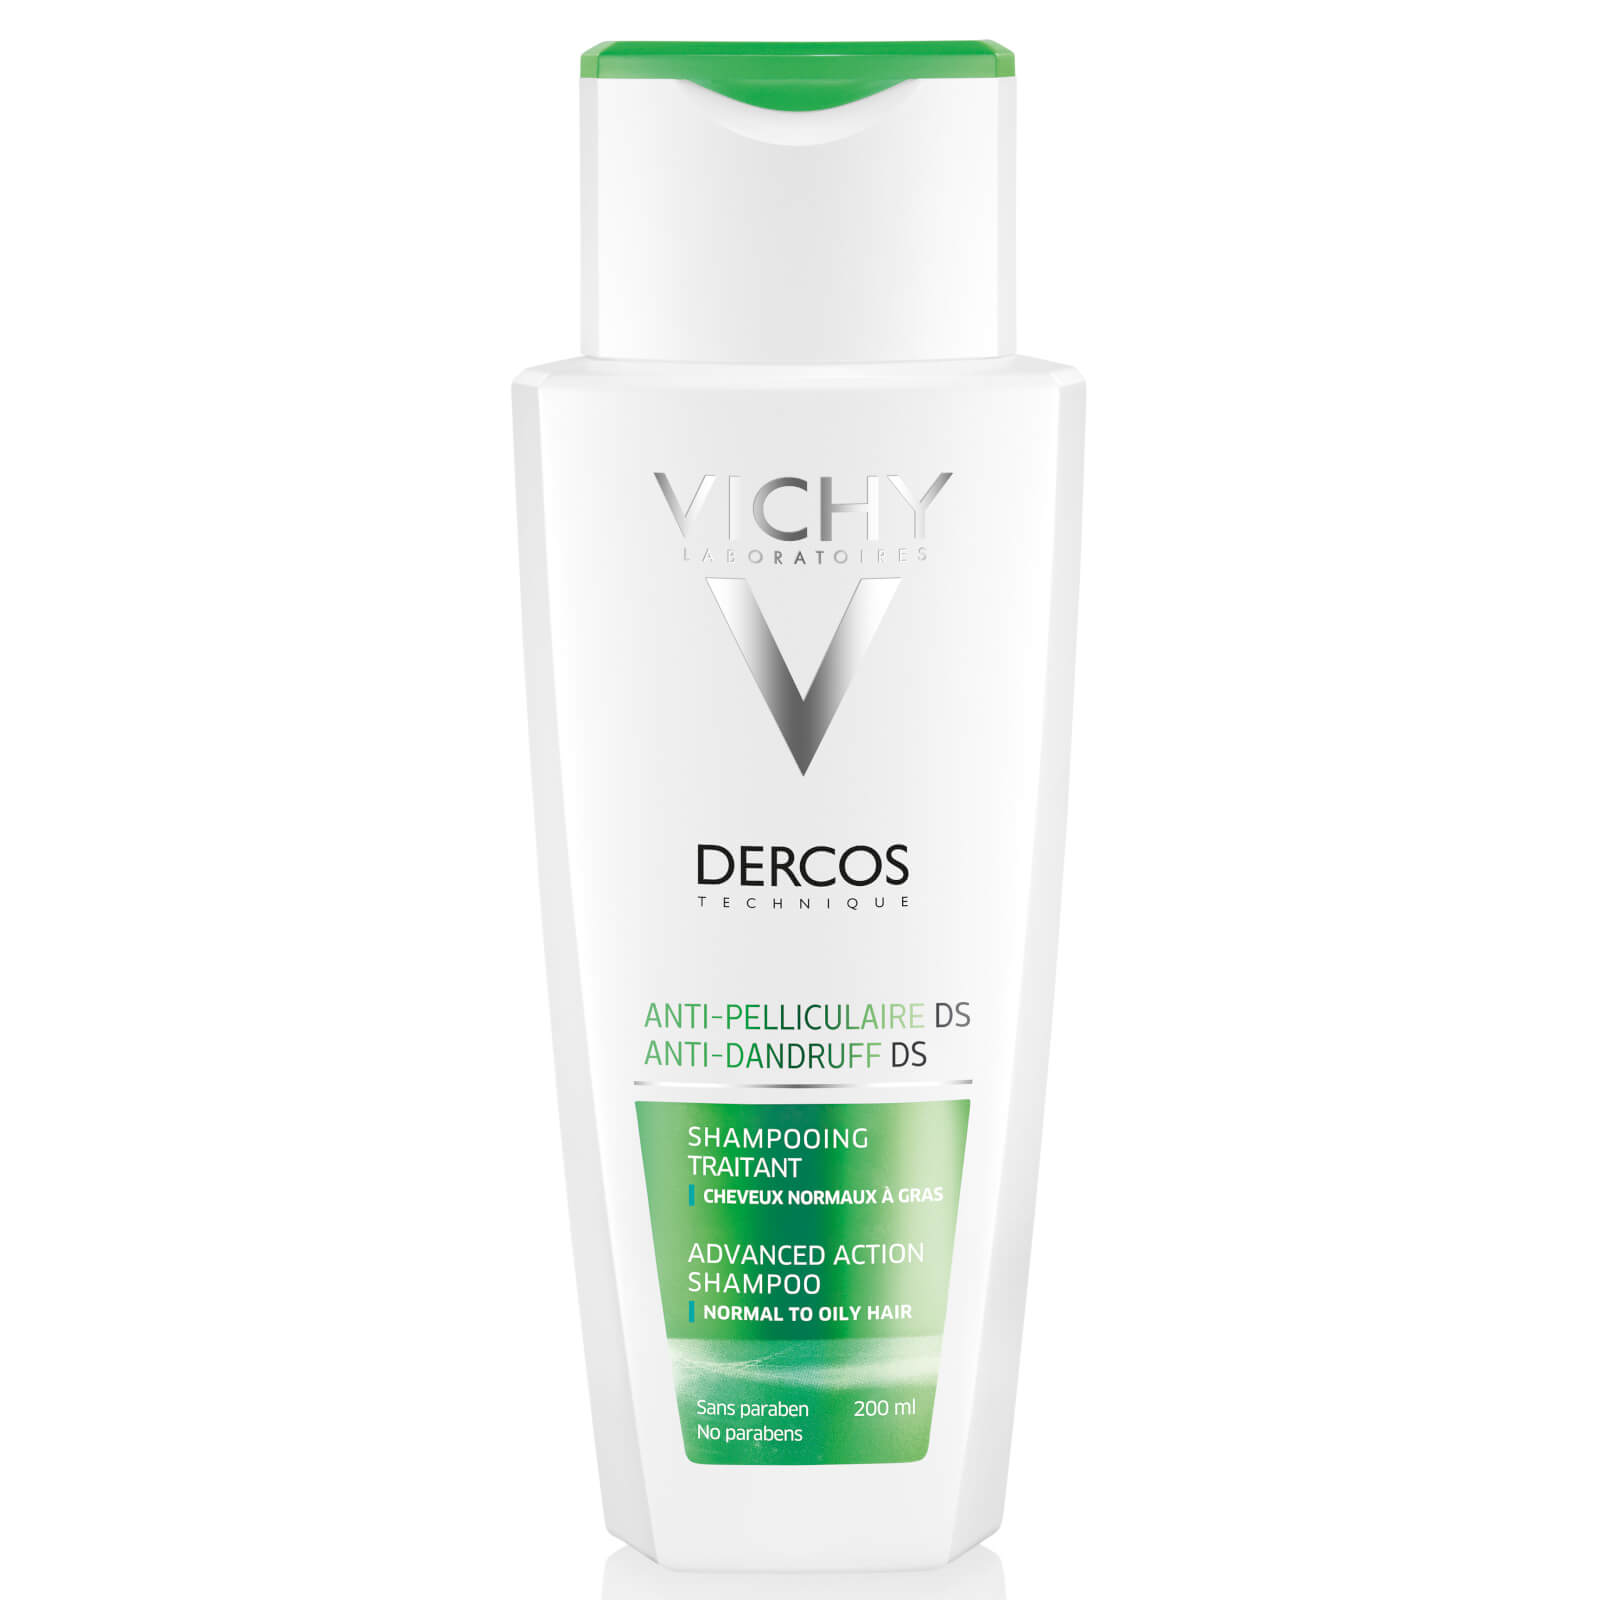 VICHY Dercos Anti-Dandruff - Normal to Oily Hair Shampoo 200ml